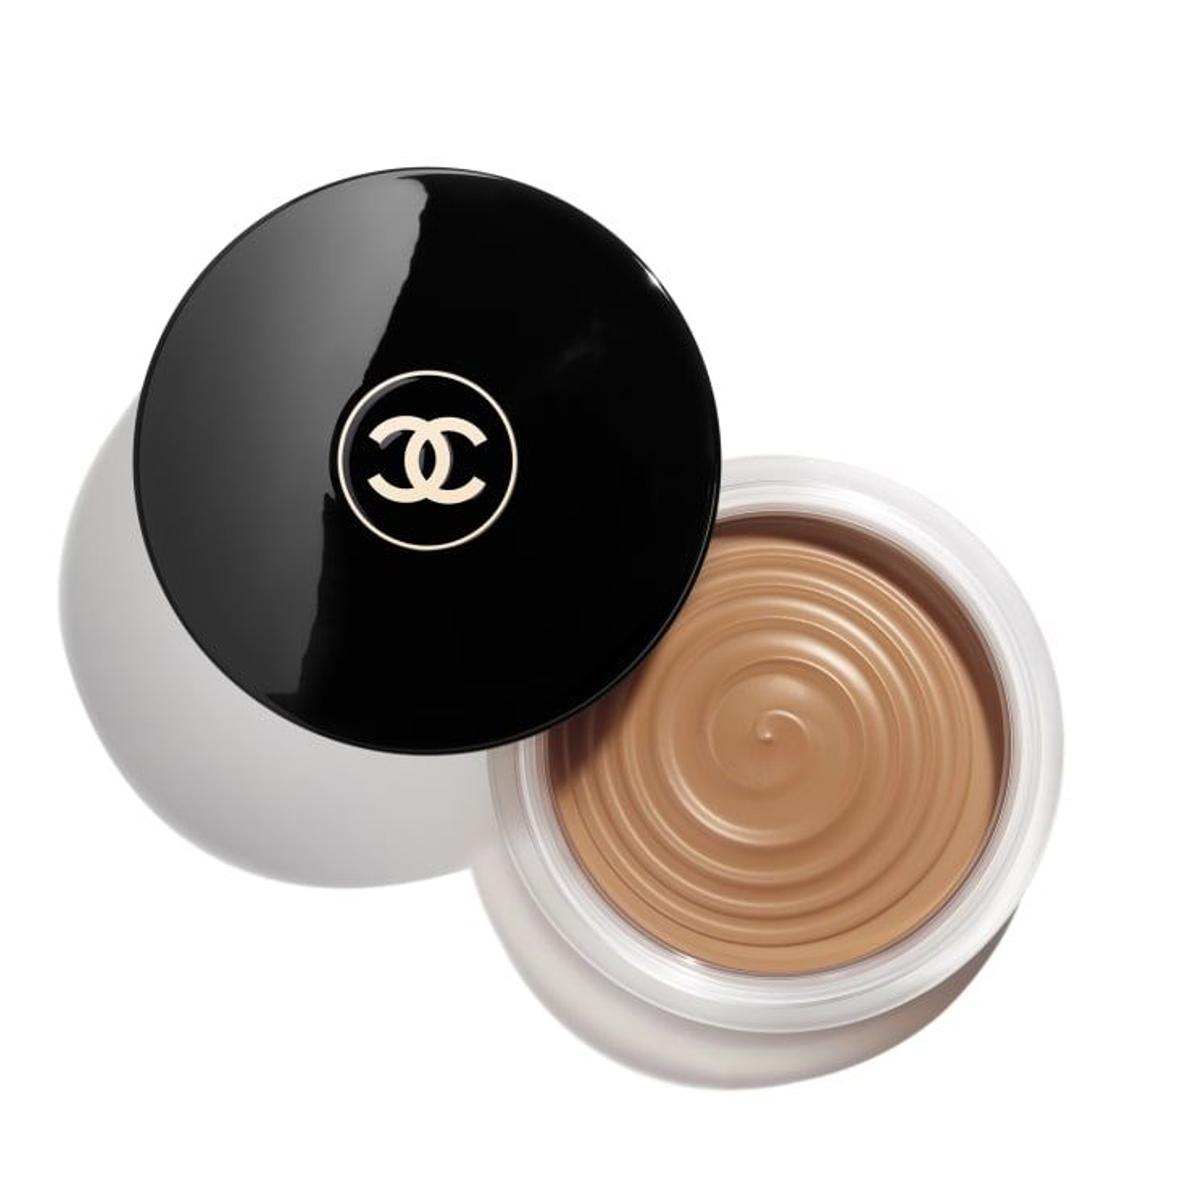 Crema gel bronceadora efecto buena cara de Chanel